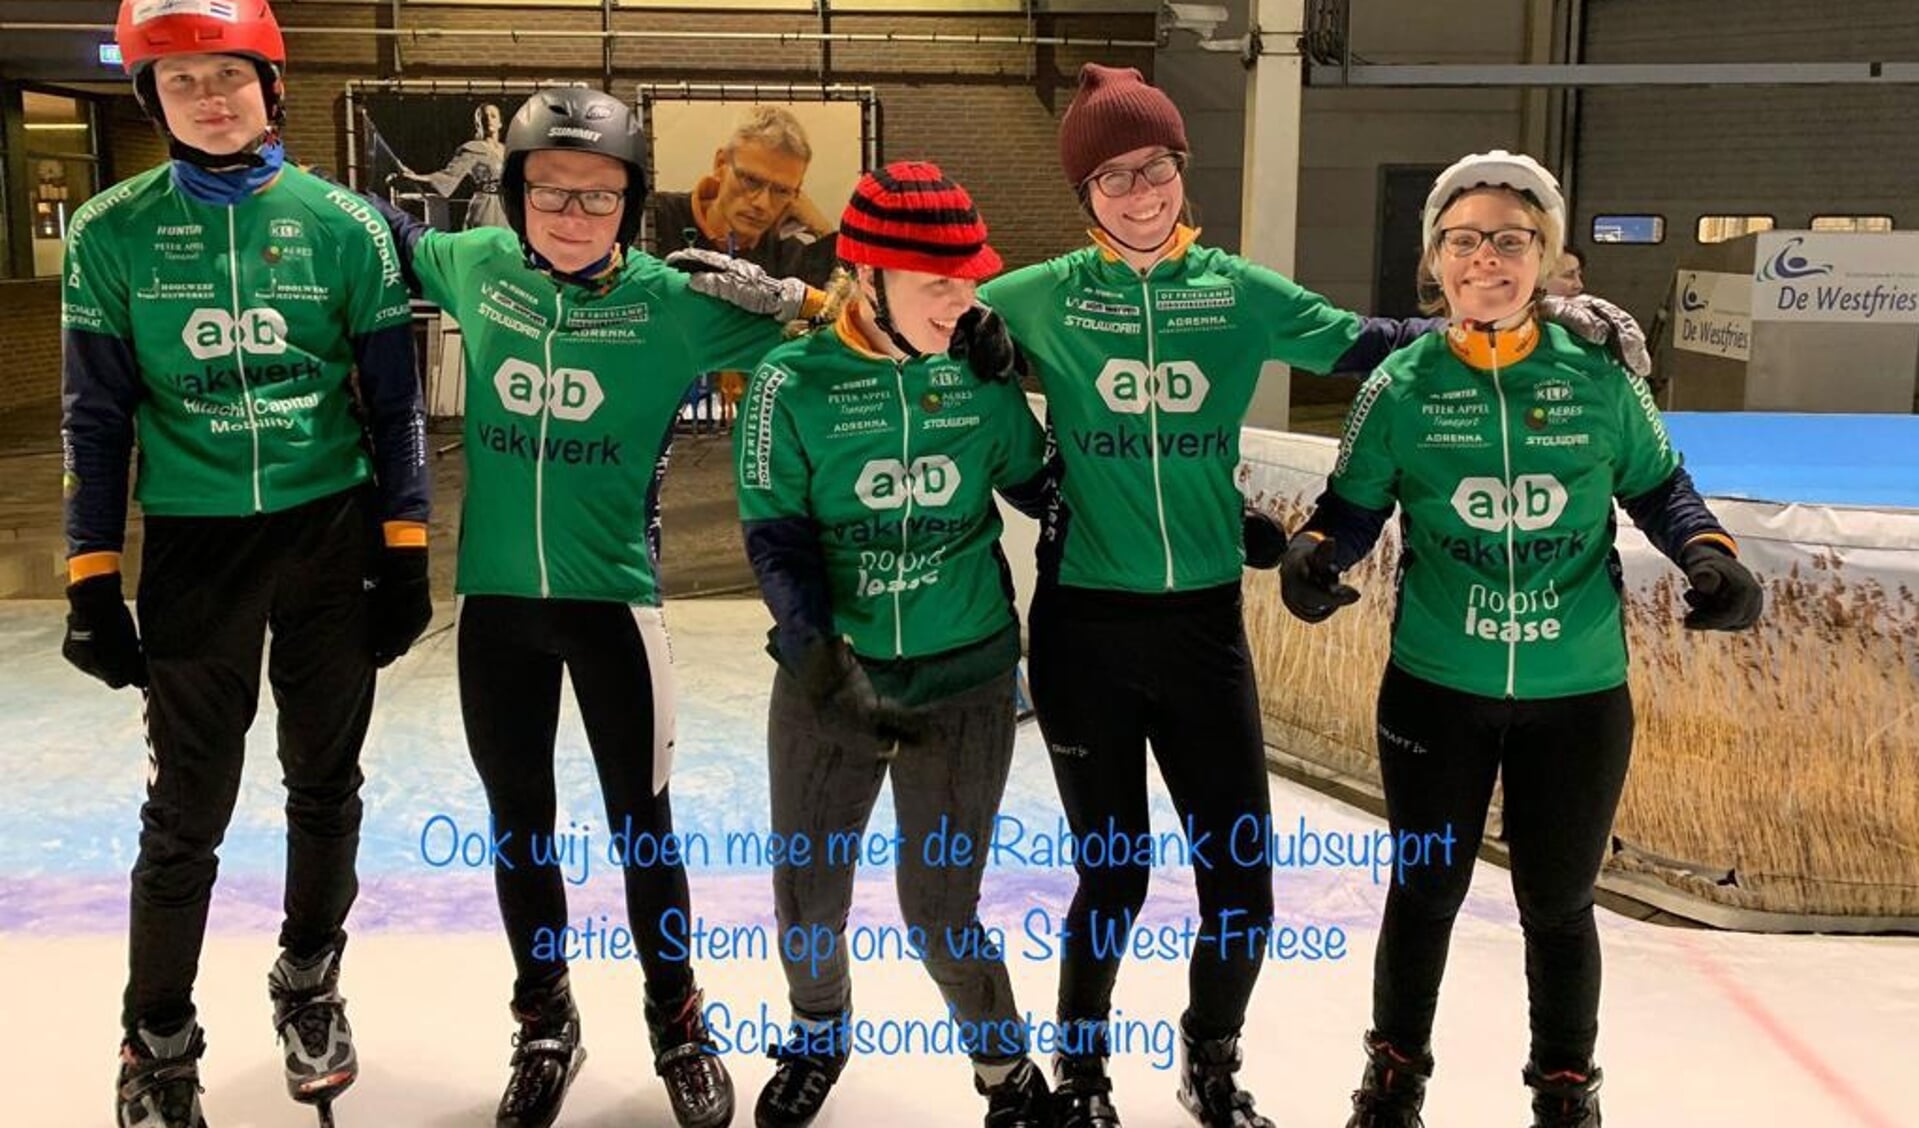 Steun de G-schaatsers via de clubsupport actie.